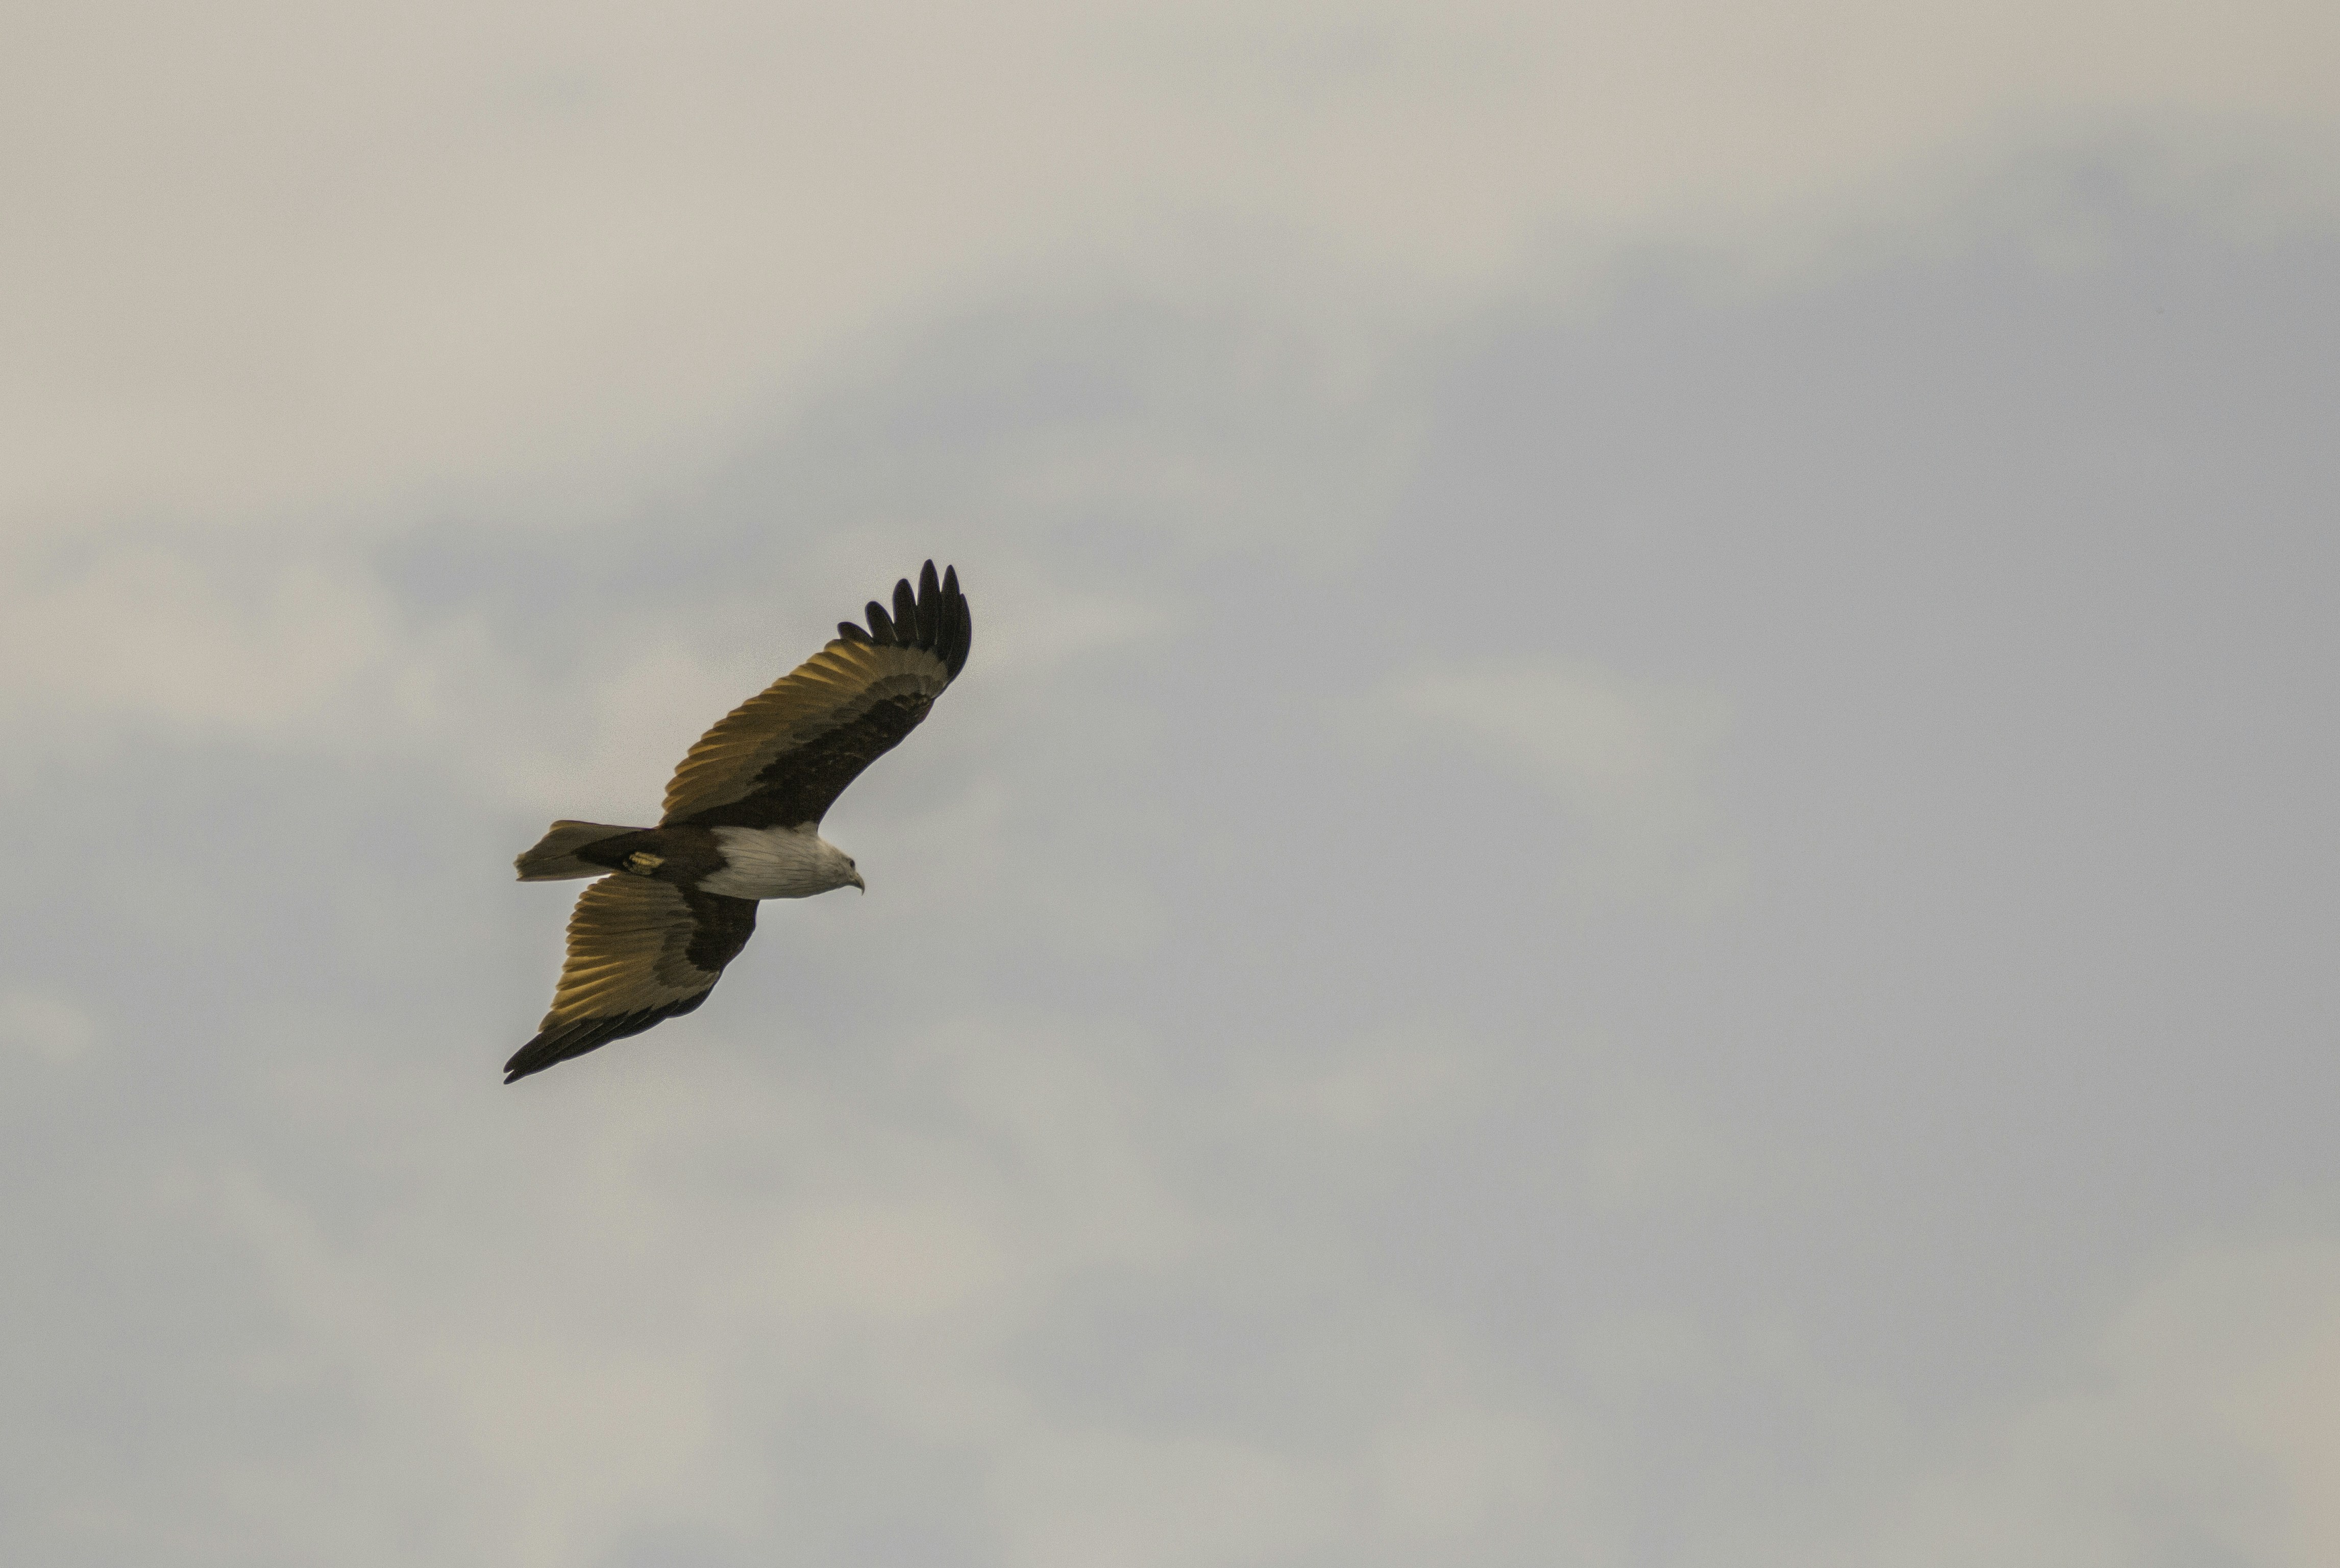 Brahminy Kite Eagle soaring in the sky